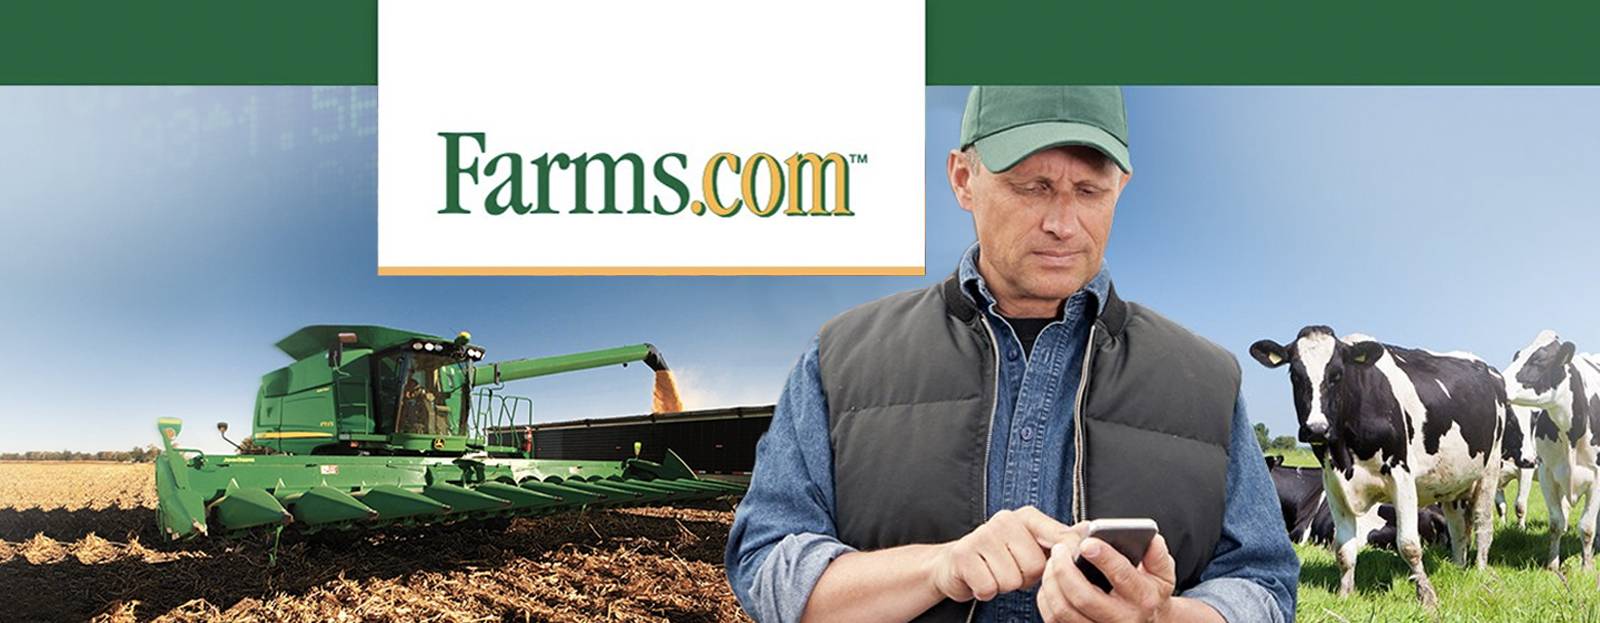 Banner for Farms.com